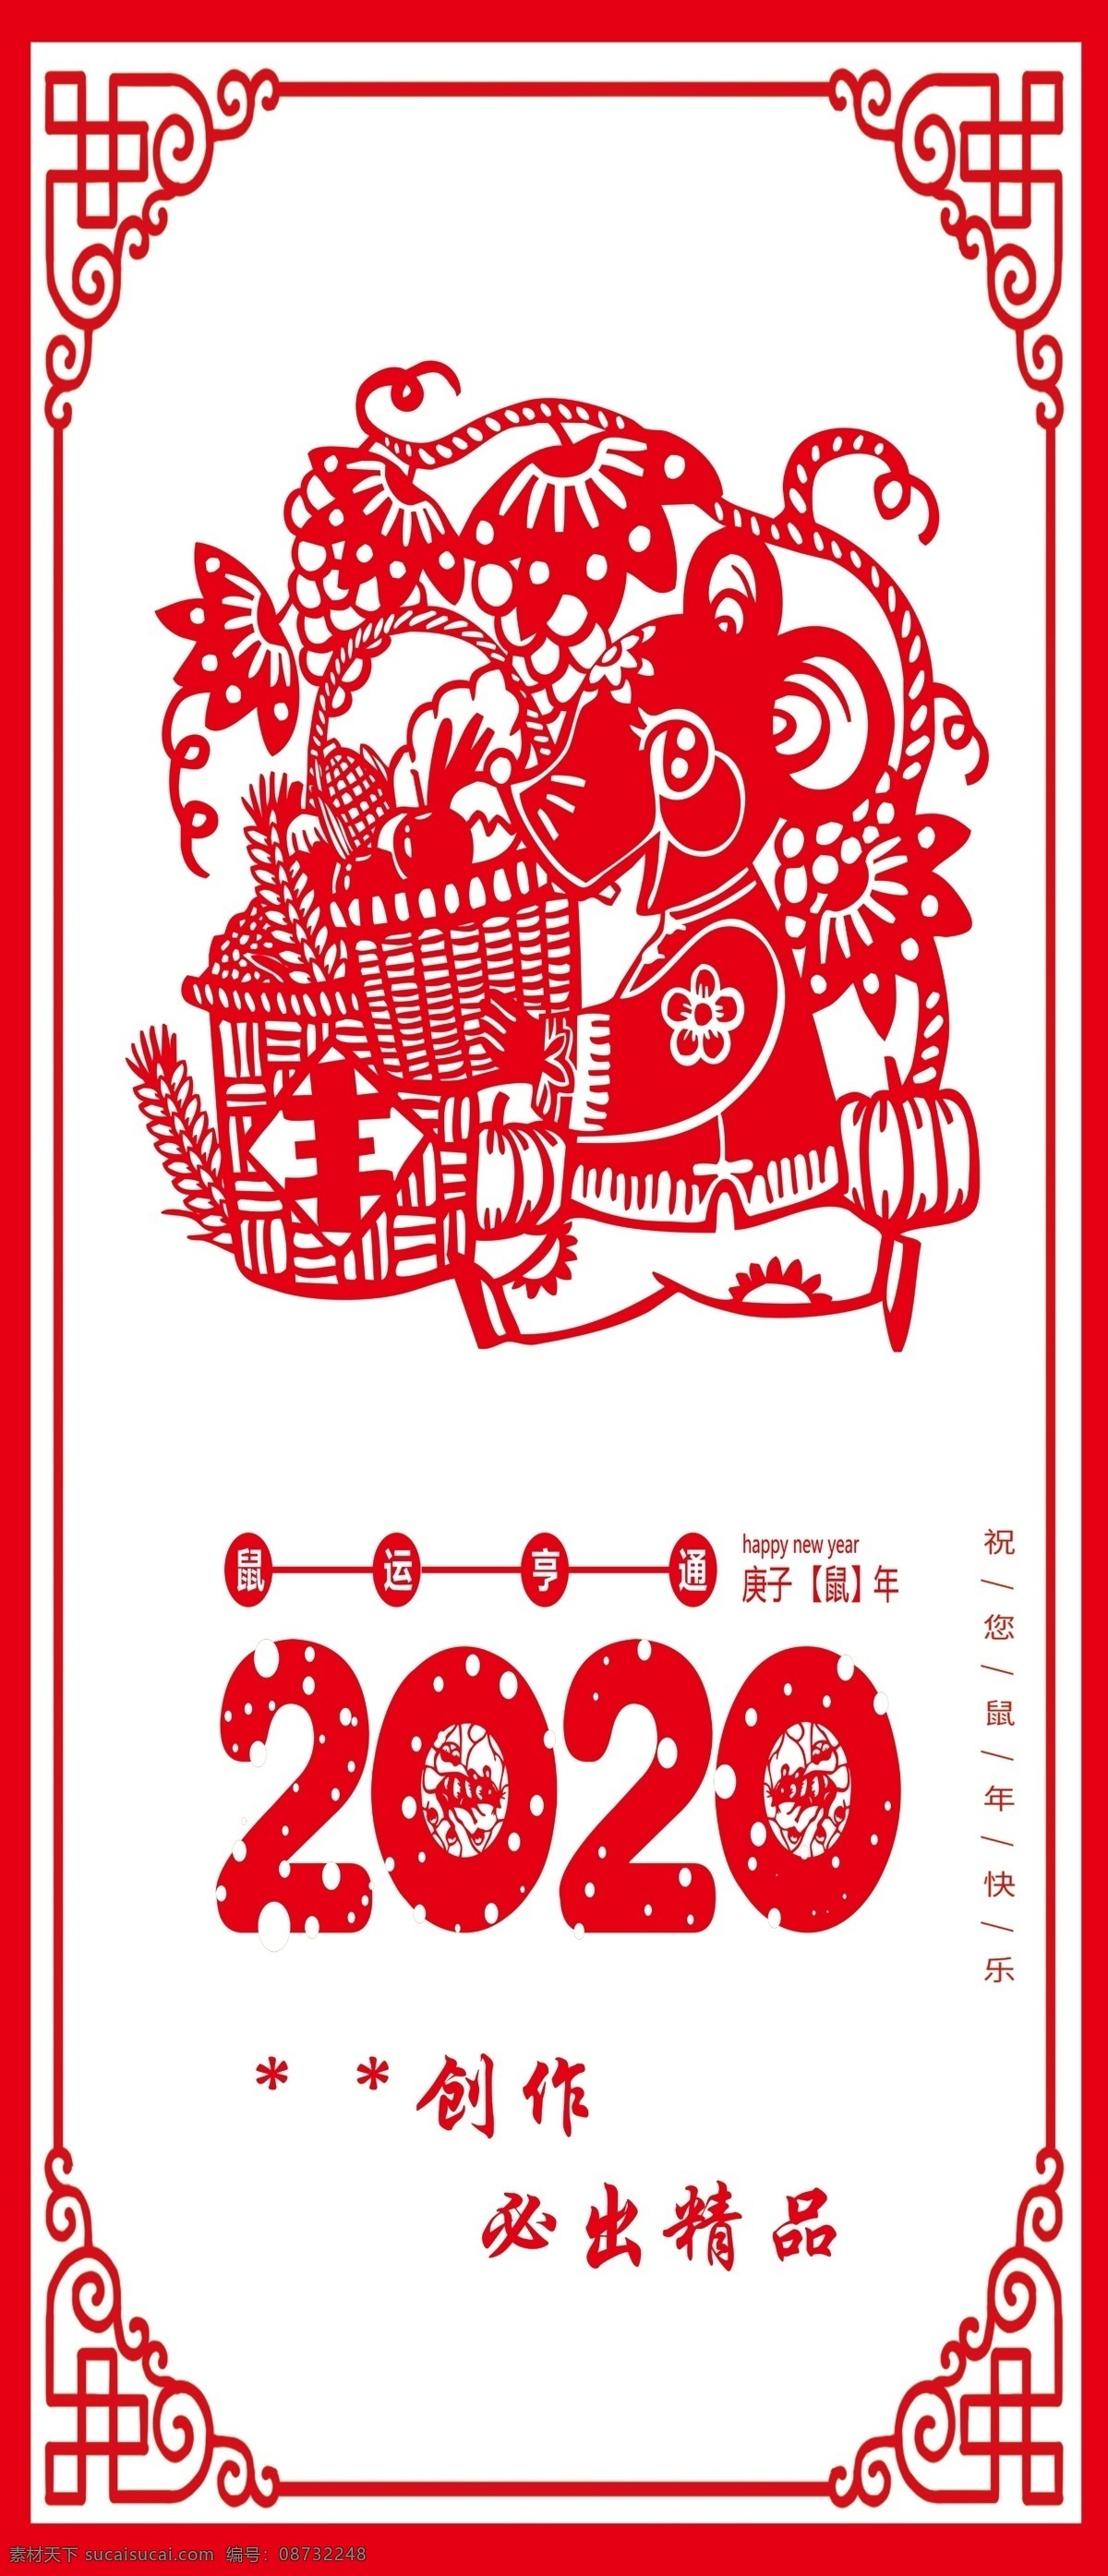 鼠年剪纸 鼠 剪纸 2020年 广告 海报 丰收 复古框